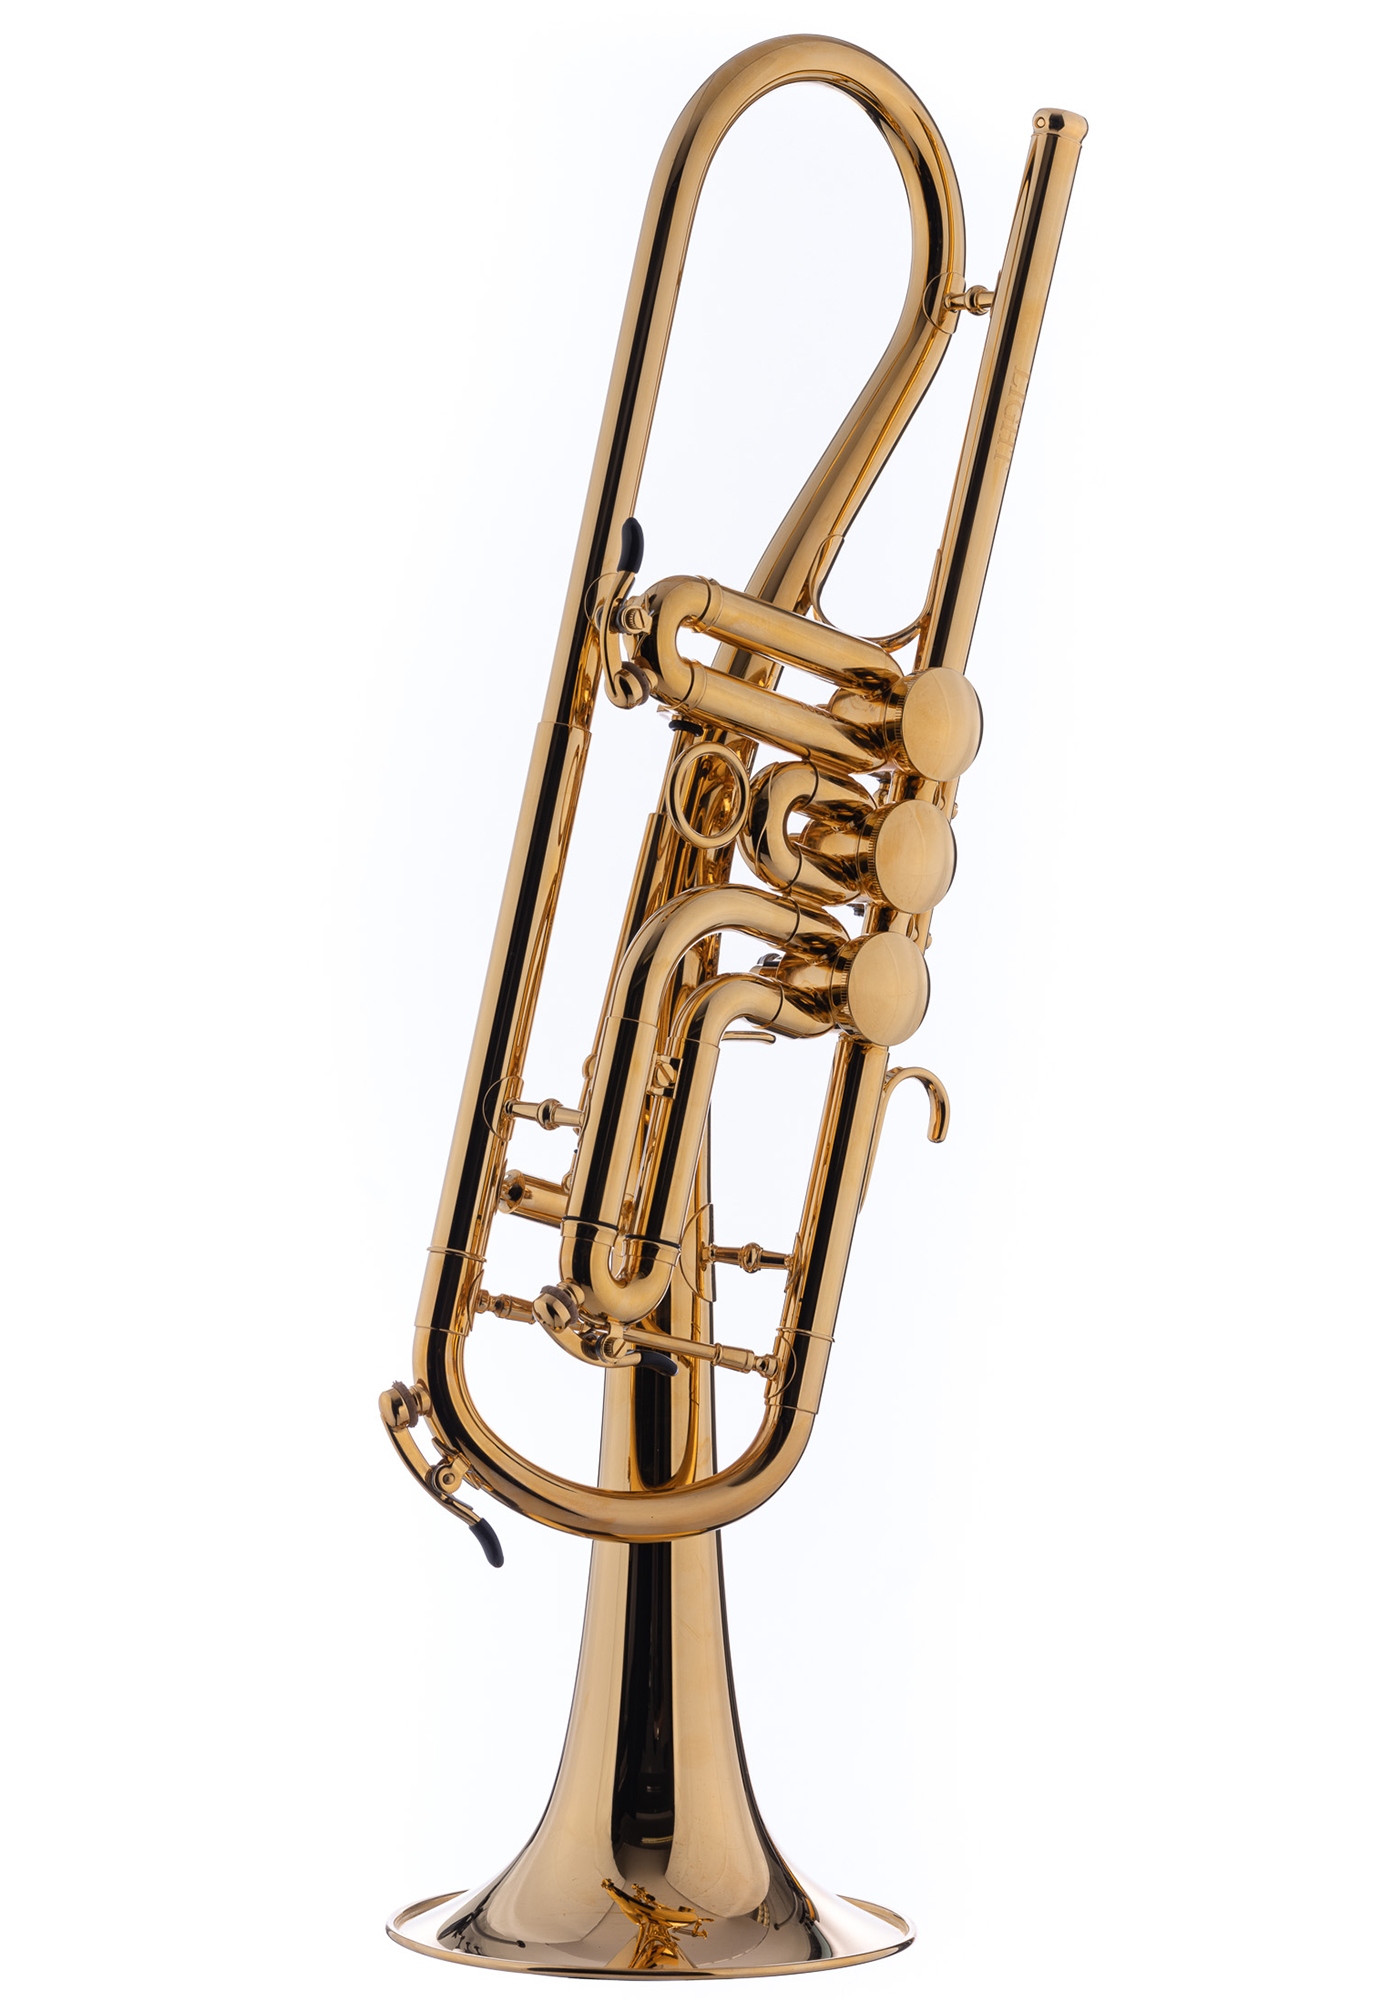 Schagerl Bb-Trumpet "GANSCHHORN" 2021 gold plated